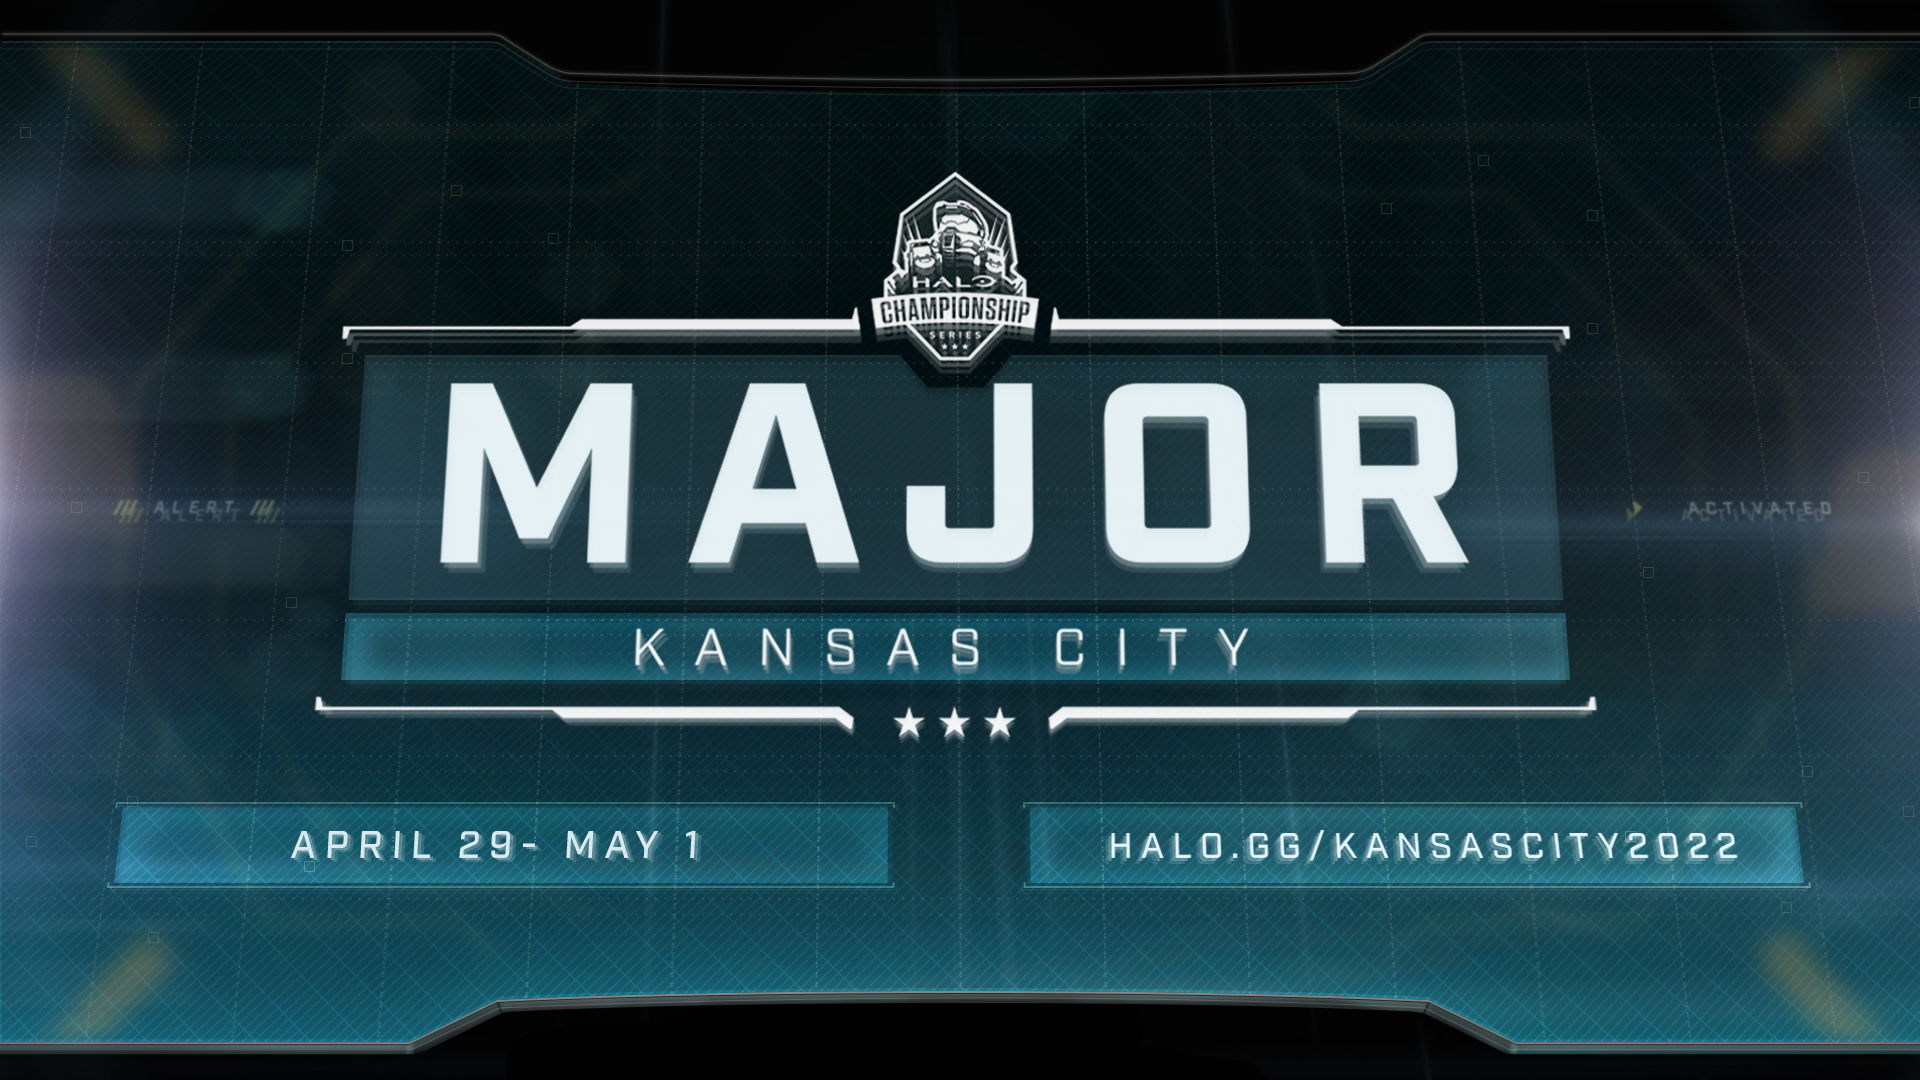 Header images for HCS Major Kansas City